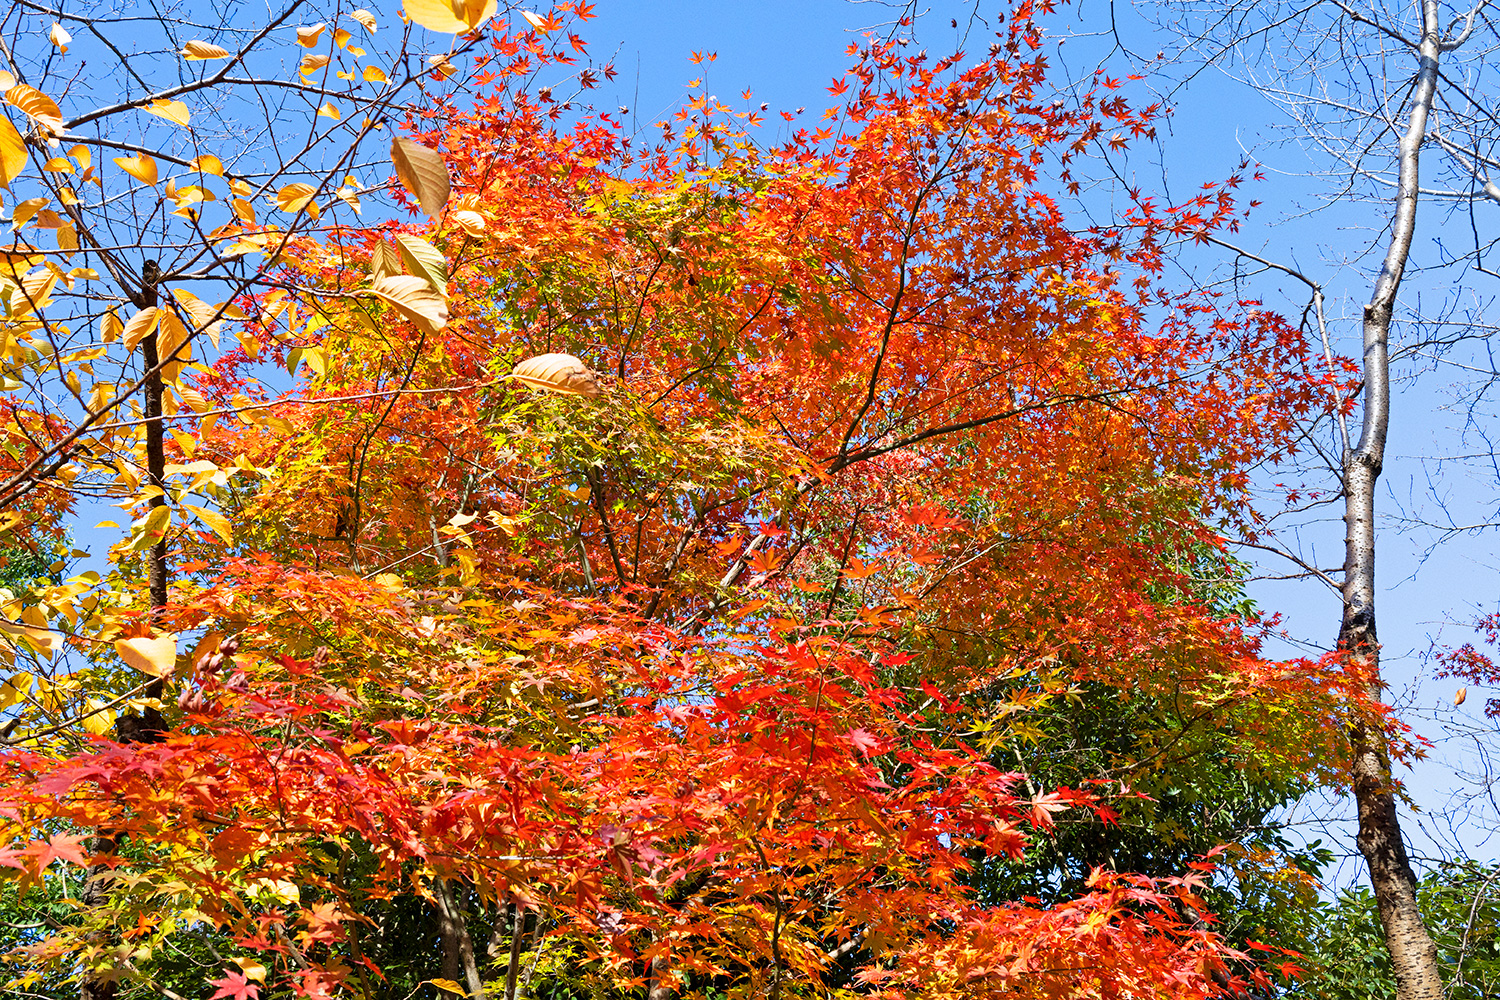 Las hojas, que han crecido a lo largo del año, tejen en la estación otoñal un brillante tapiz de follaje rojizo, ocre, dorado y verde. (Tokio, diciembre de 2022)